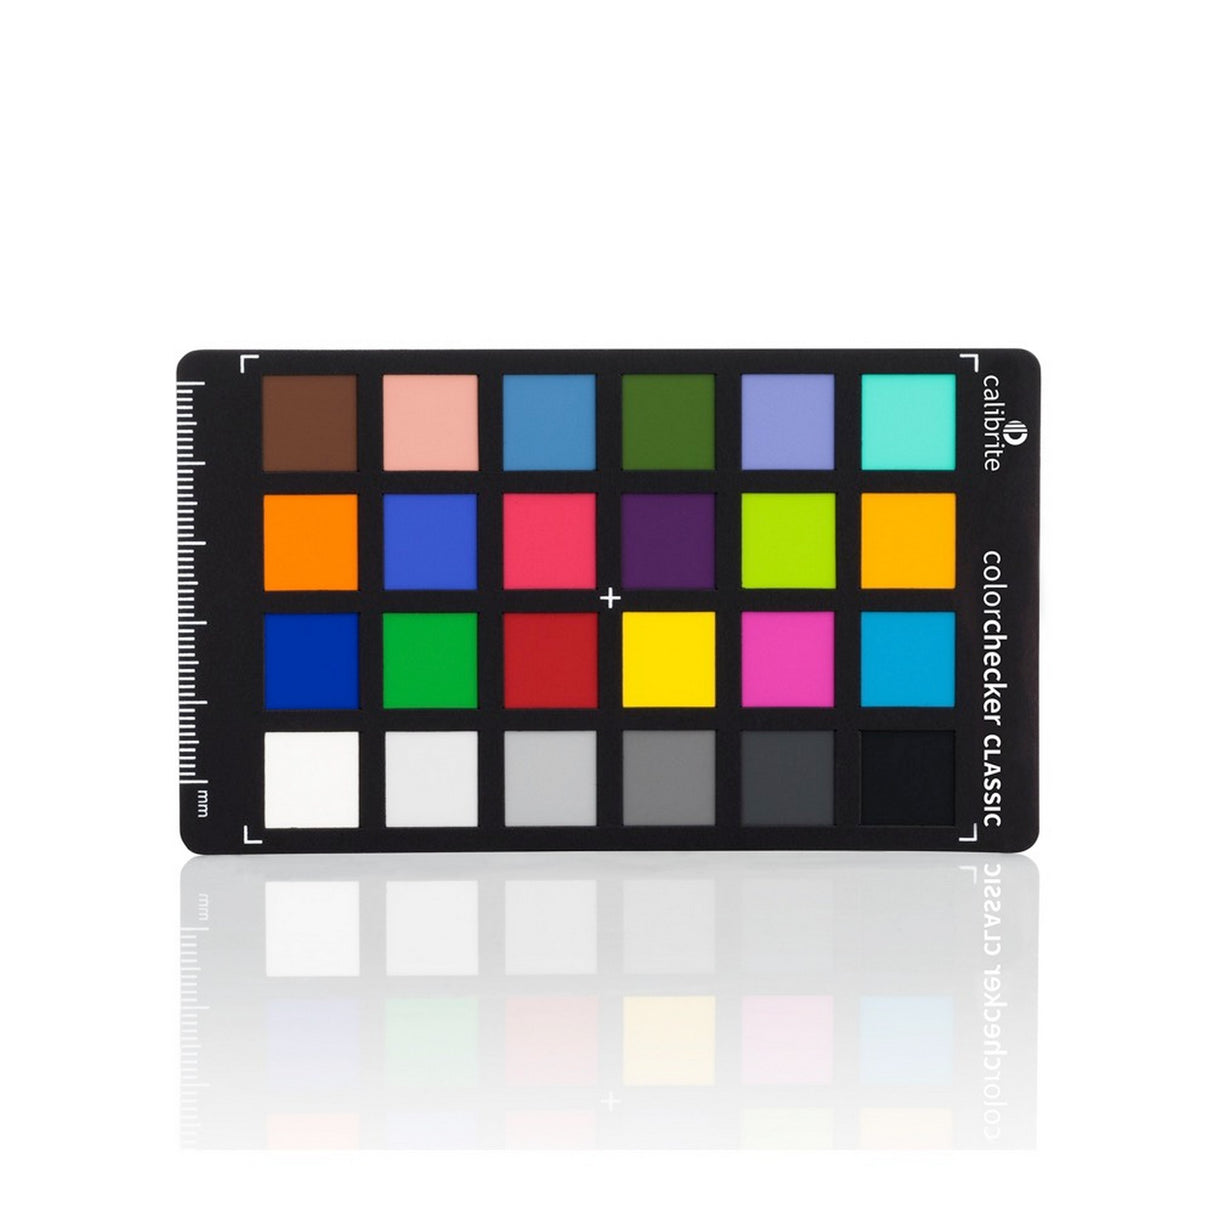 Calibrite ColorChecker Classic Mini Photo Color Control from Capture to Edit